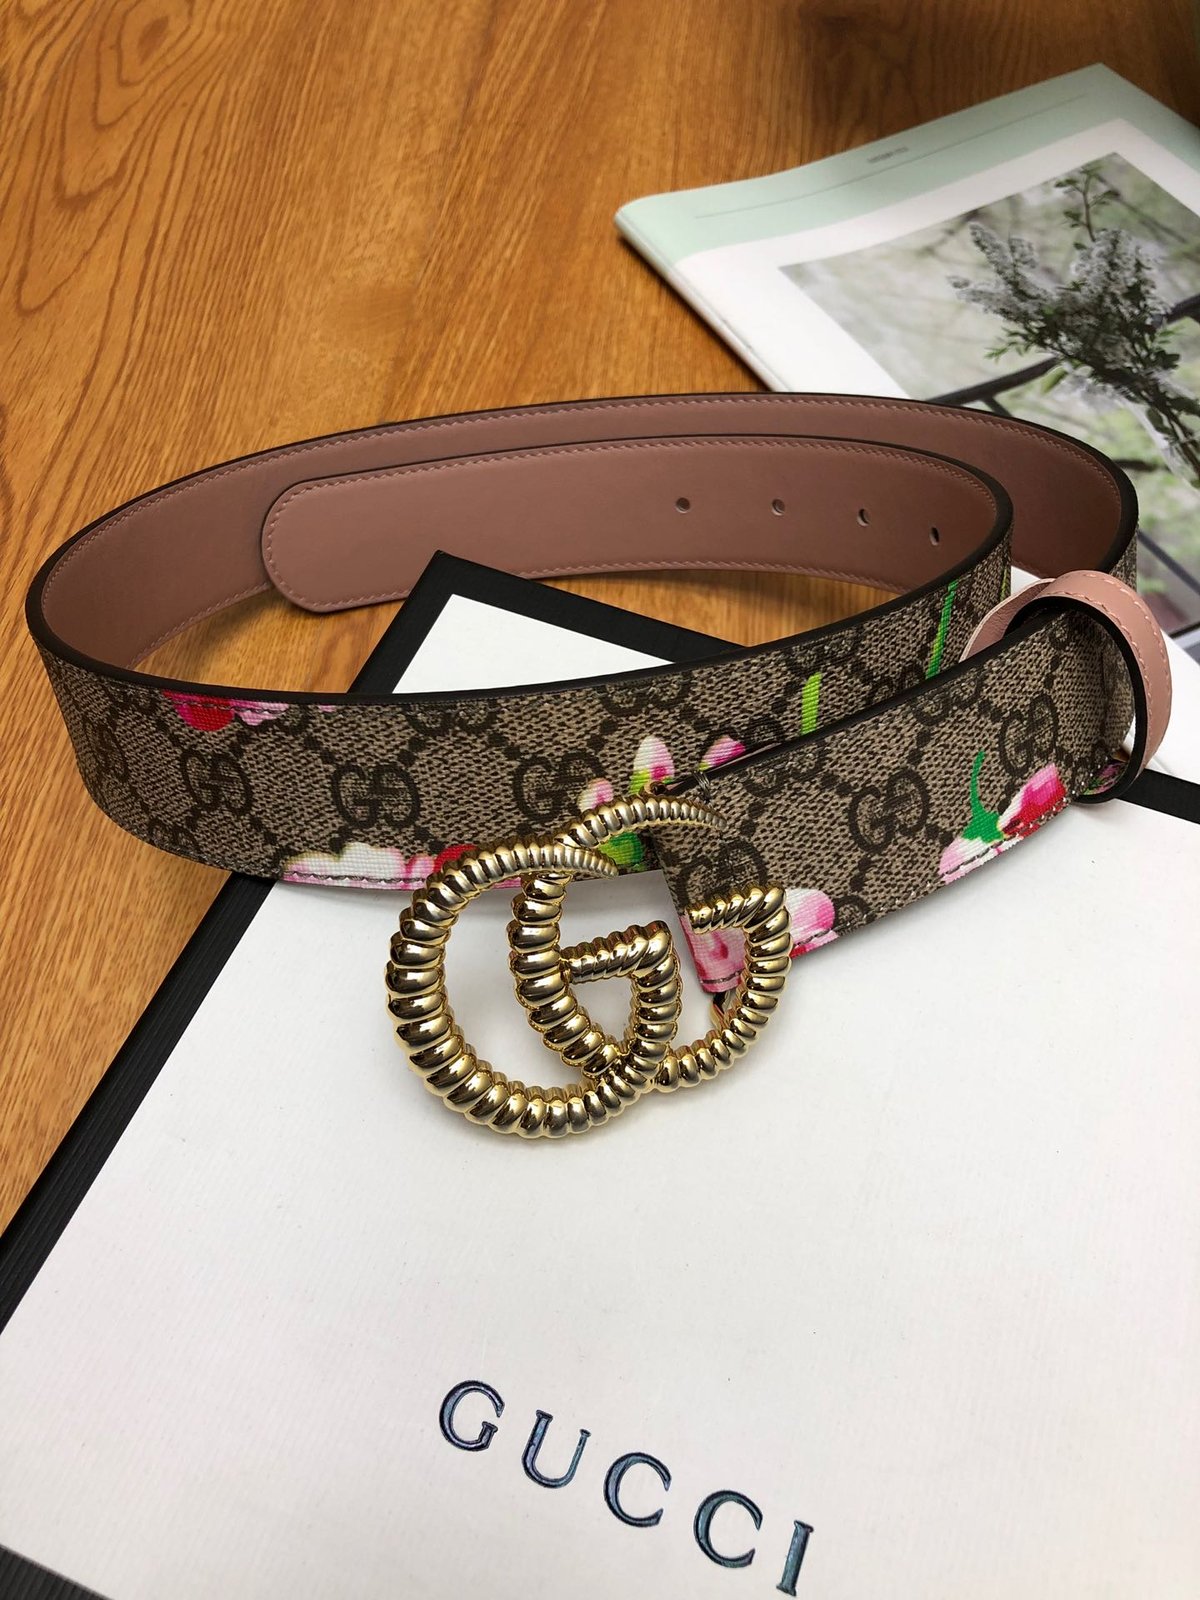 gucci women's floral belt